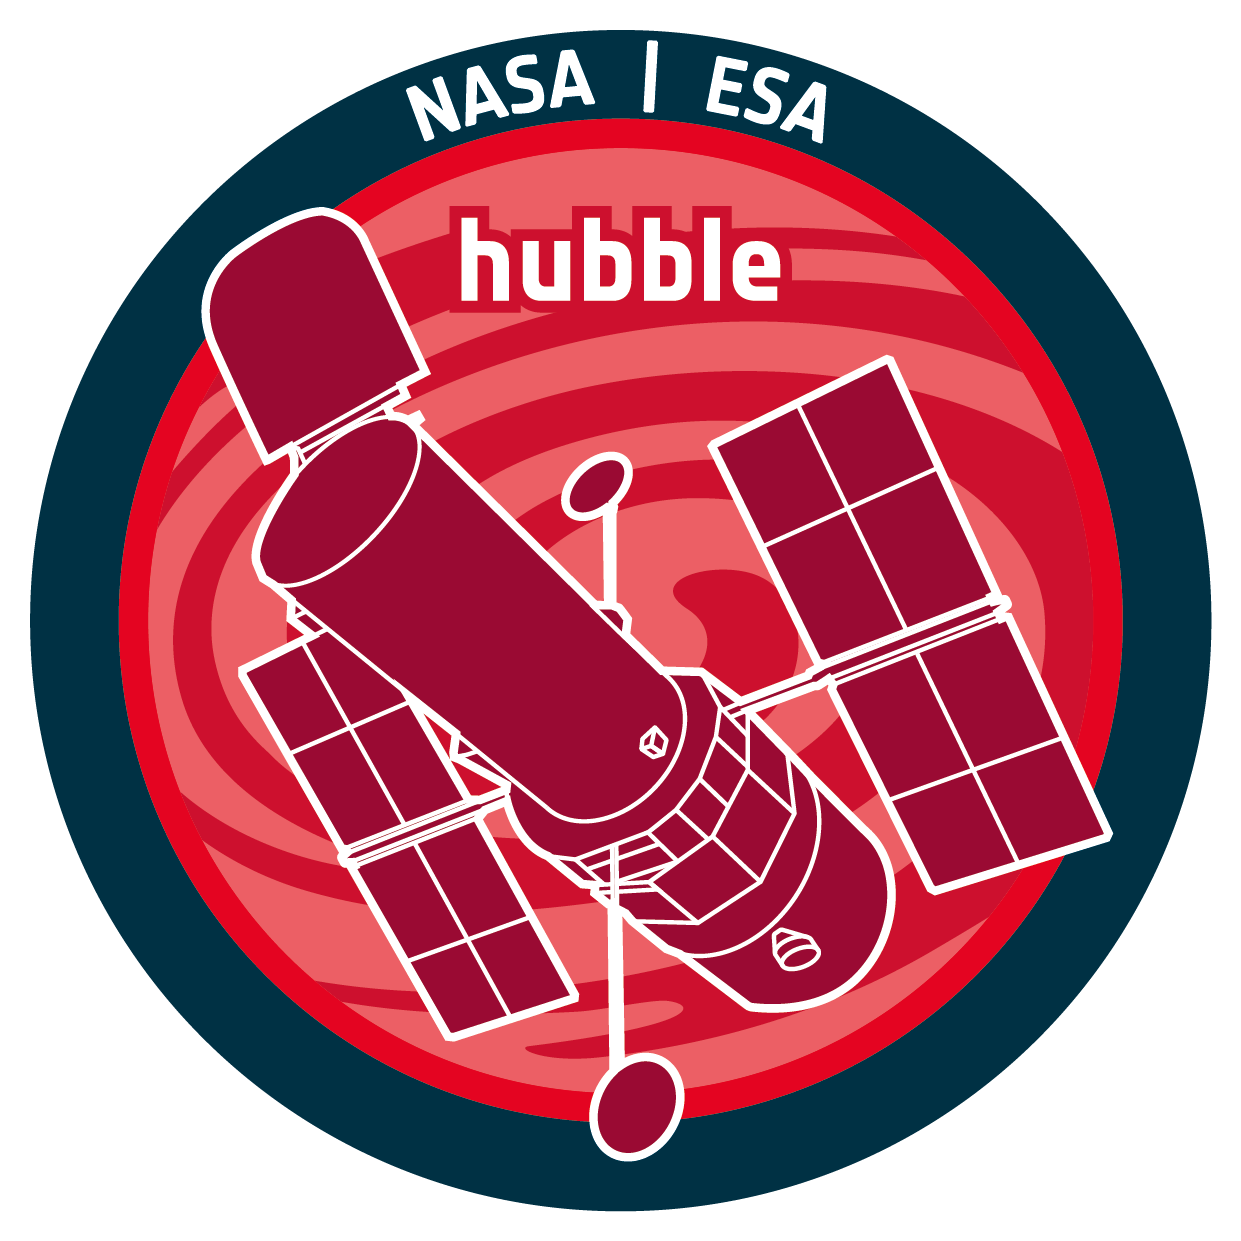 ESA/Hubble